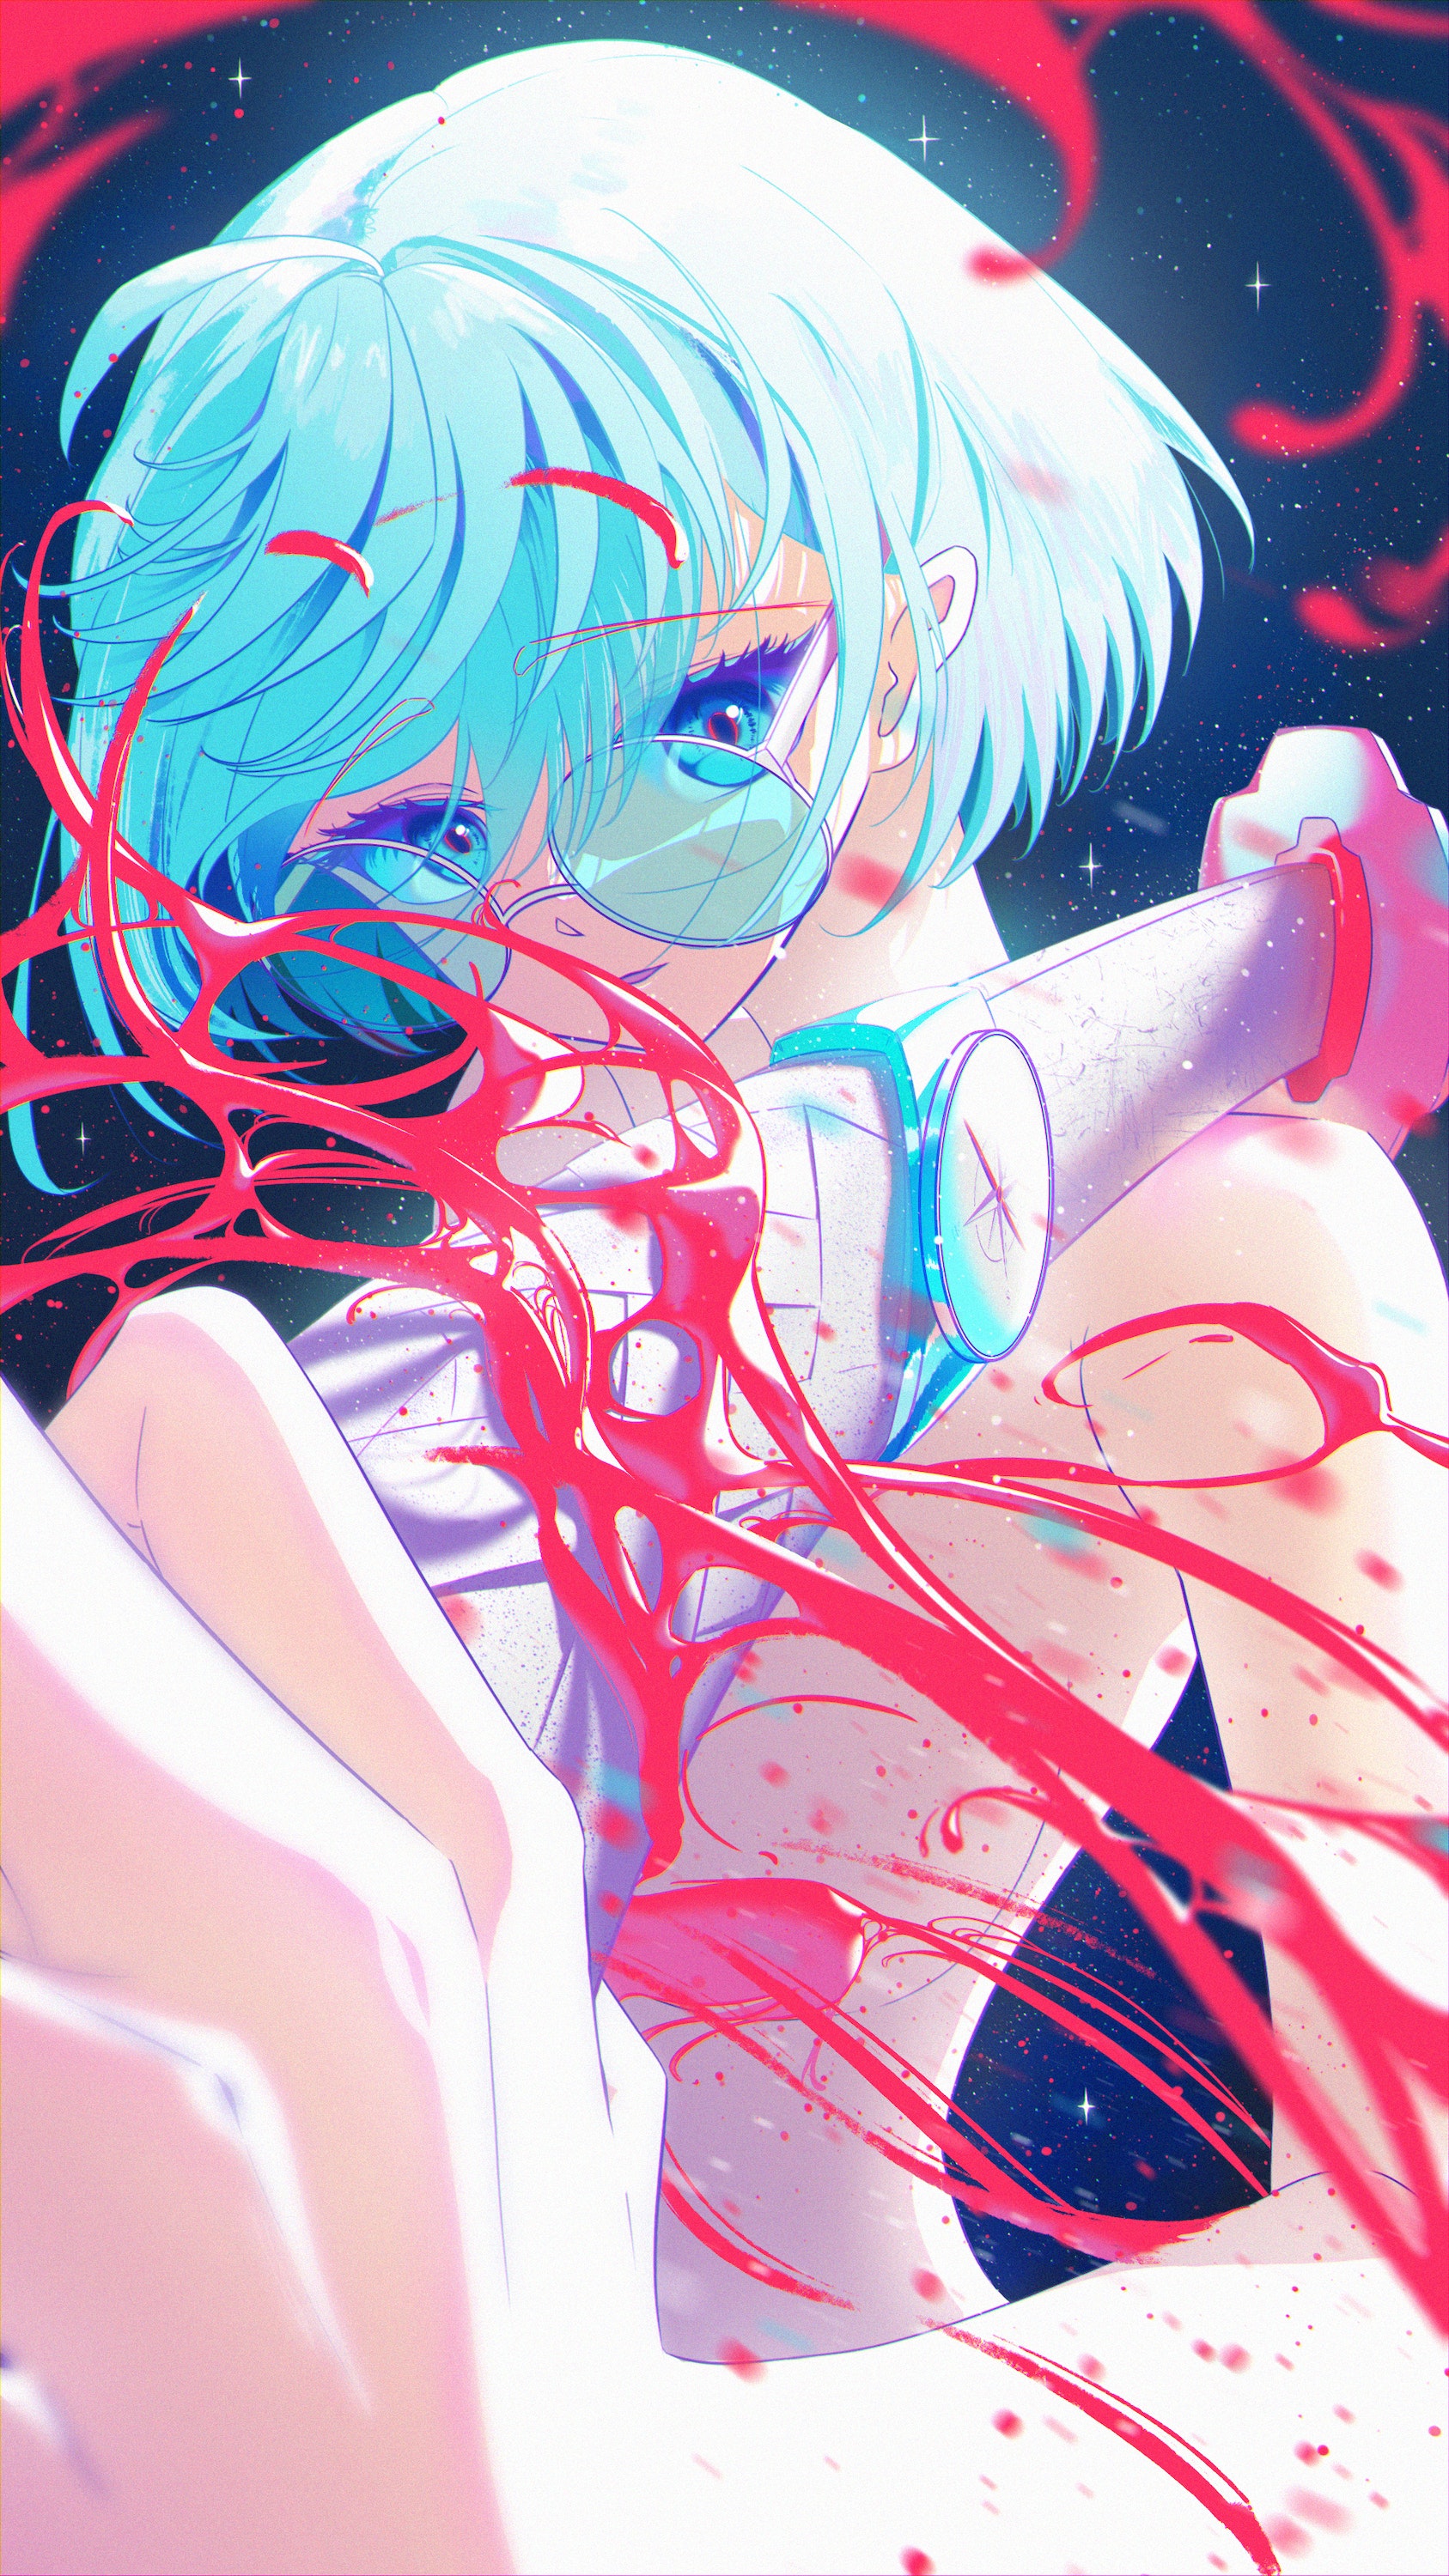 Yunillust Anime Digital Art Artwork Illustration Women Vertical Katana Blue Eyes Short Hair Glasses  1687x3000